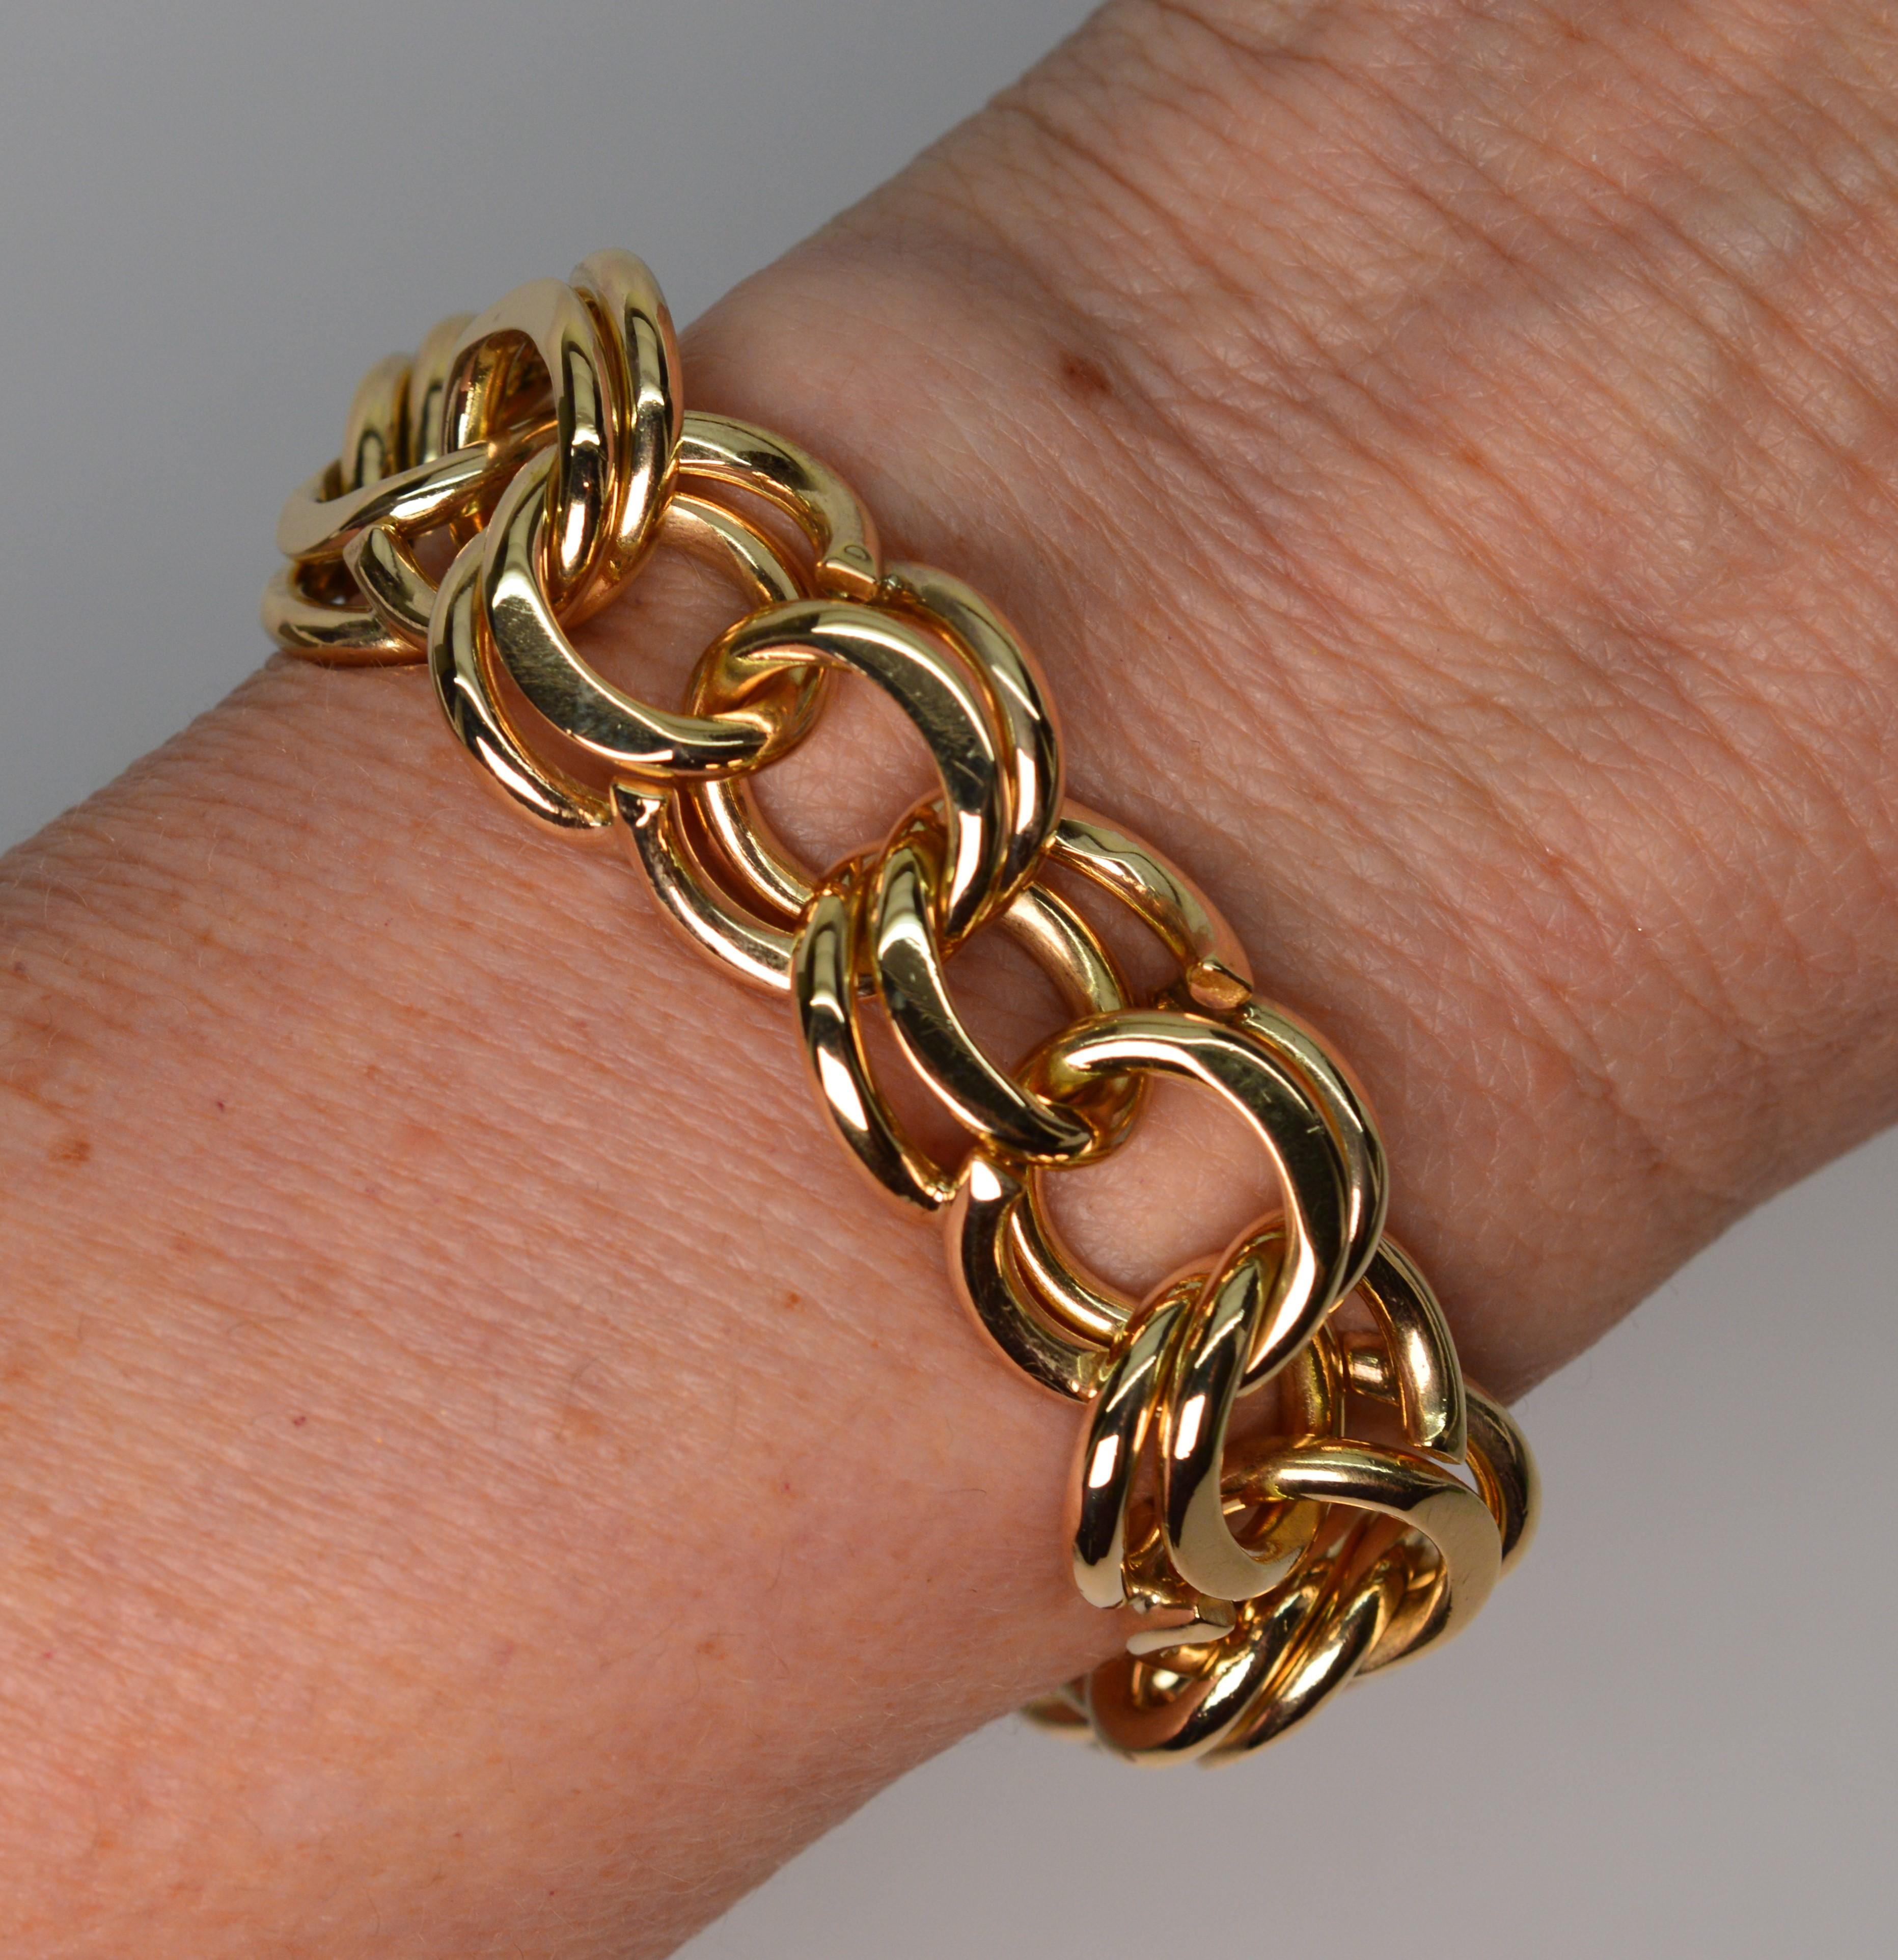 Ce bracelet polyvalent en or jaune 14 carats, doublement plat et ouvert, présente un poids et une longueur considérables. 
D'une longueur généreuse de 8-1/8 pouces, cette pièce audacieuse est créée à partir de doubles maillons imbriqués de spirales